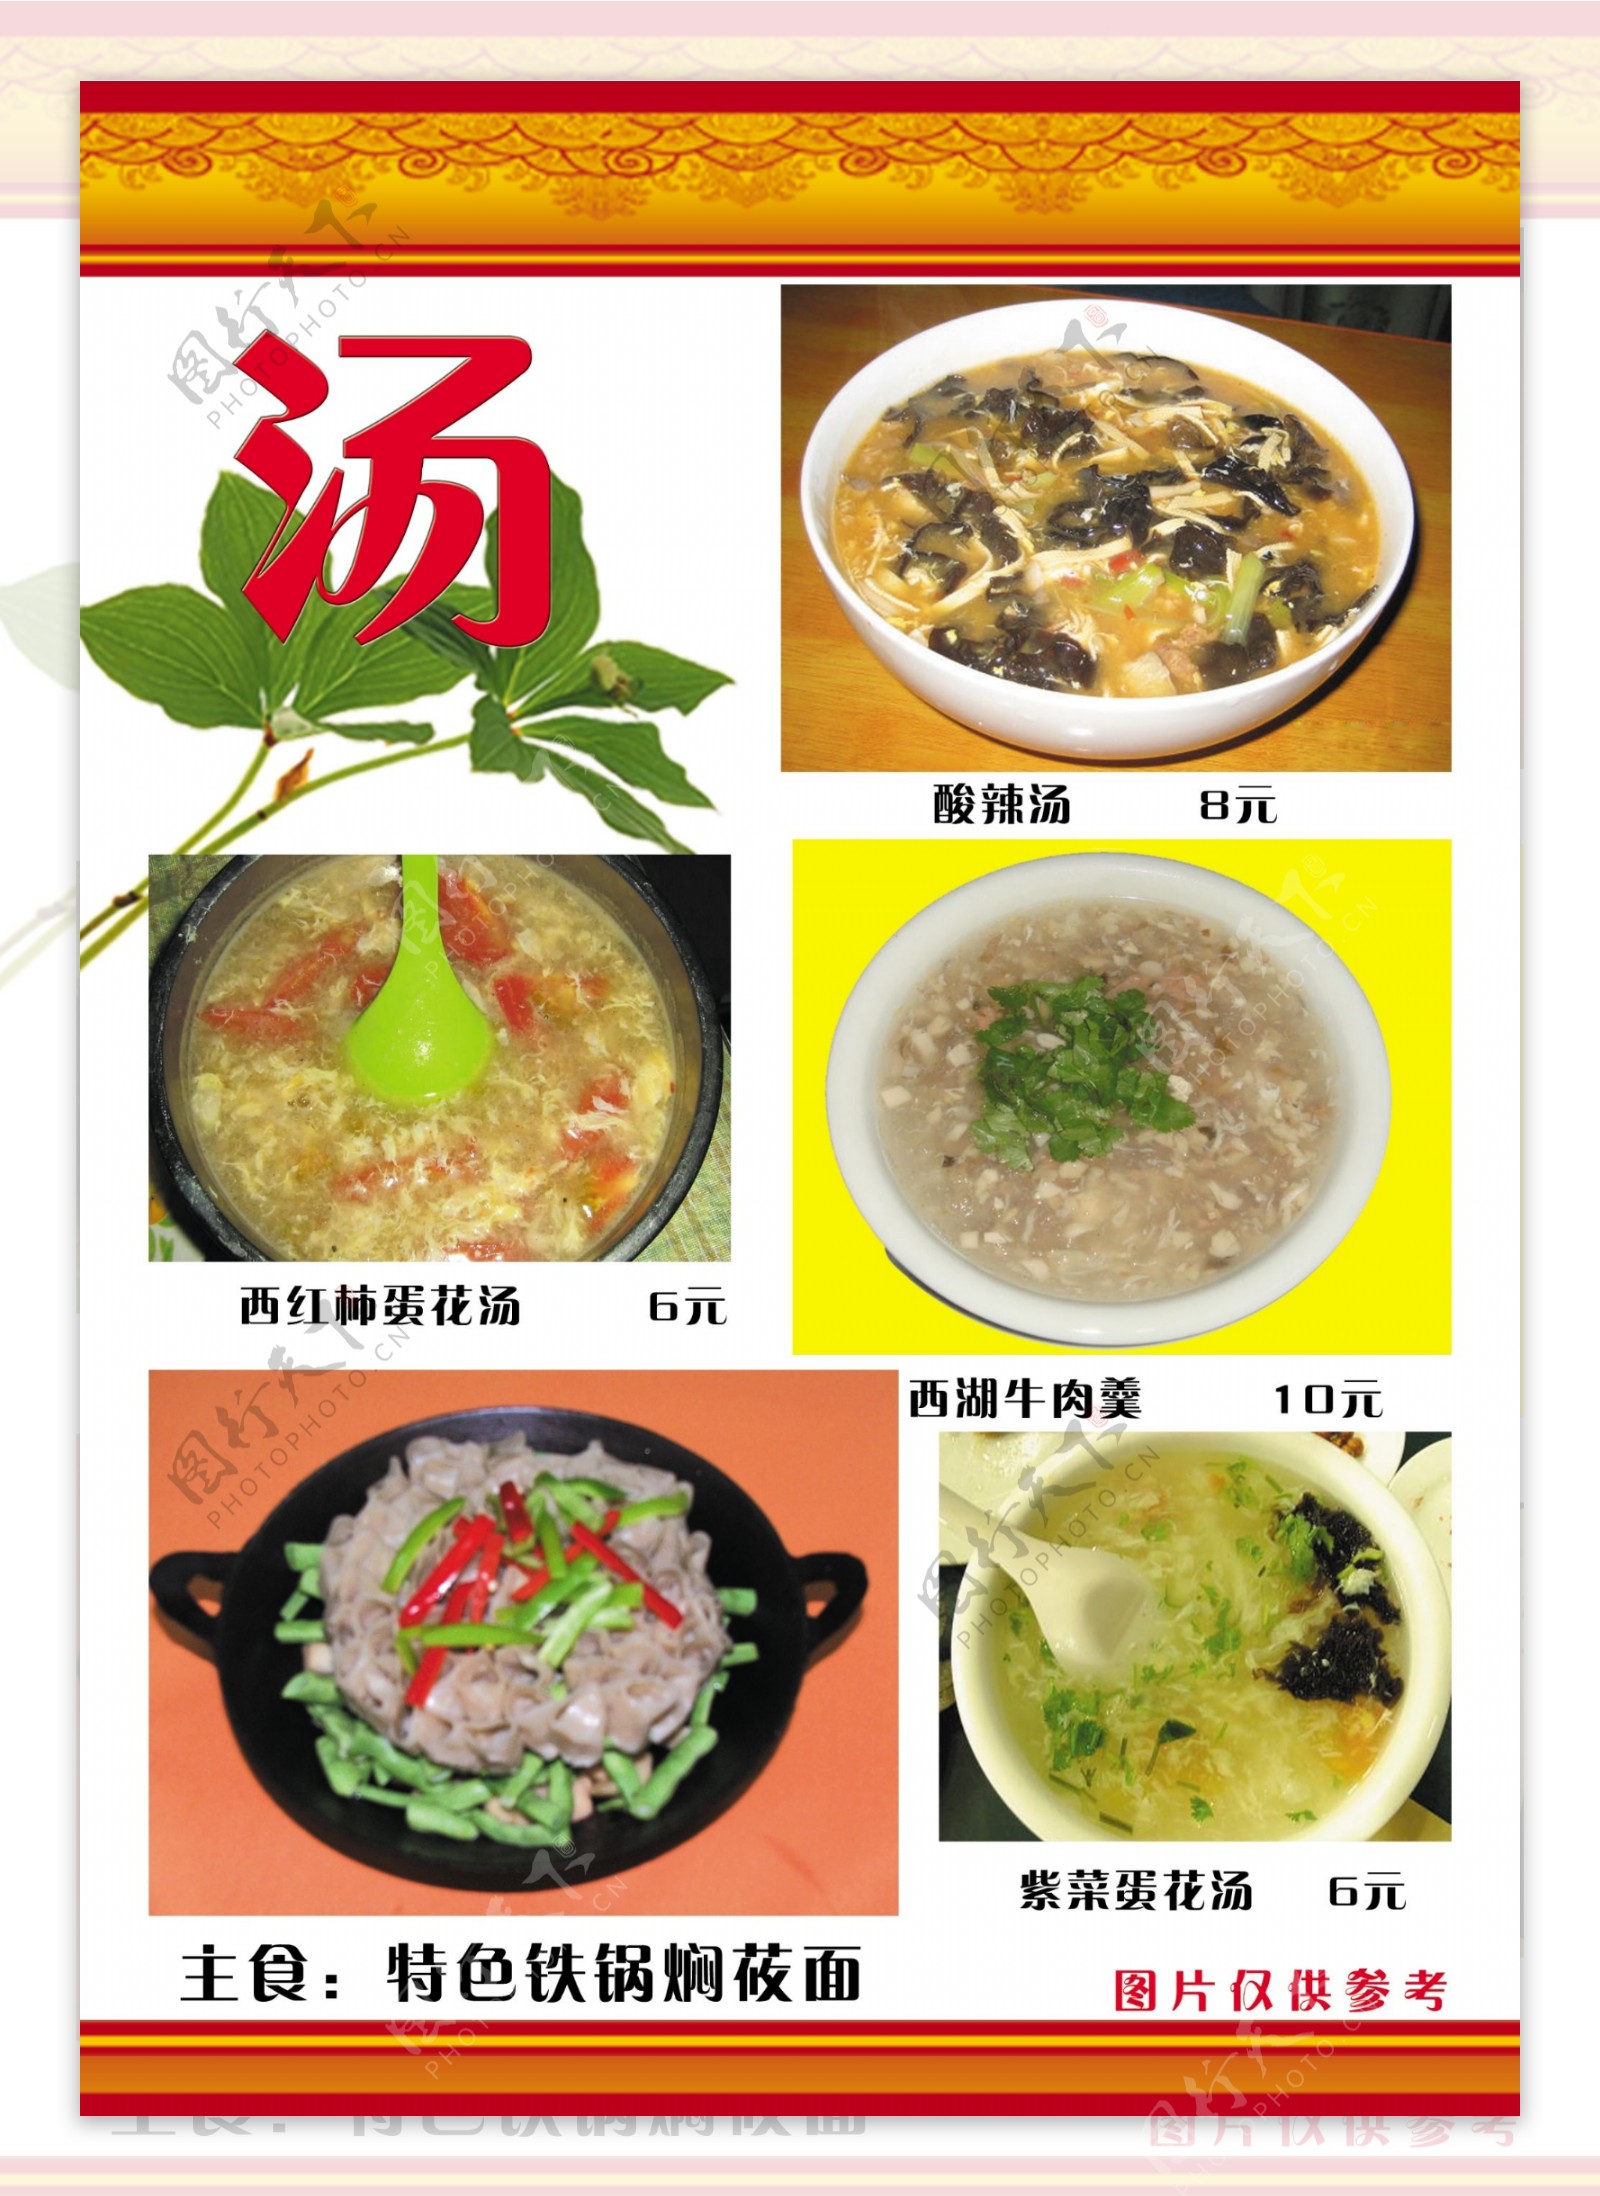 瑞兆饺香阁菜谱12食品餐饮菜单菜谱分层PSD